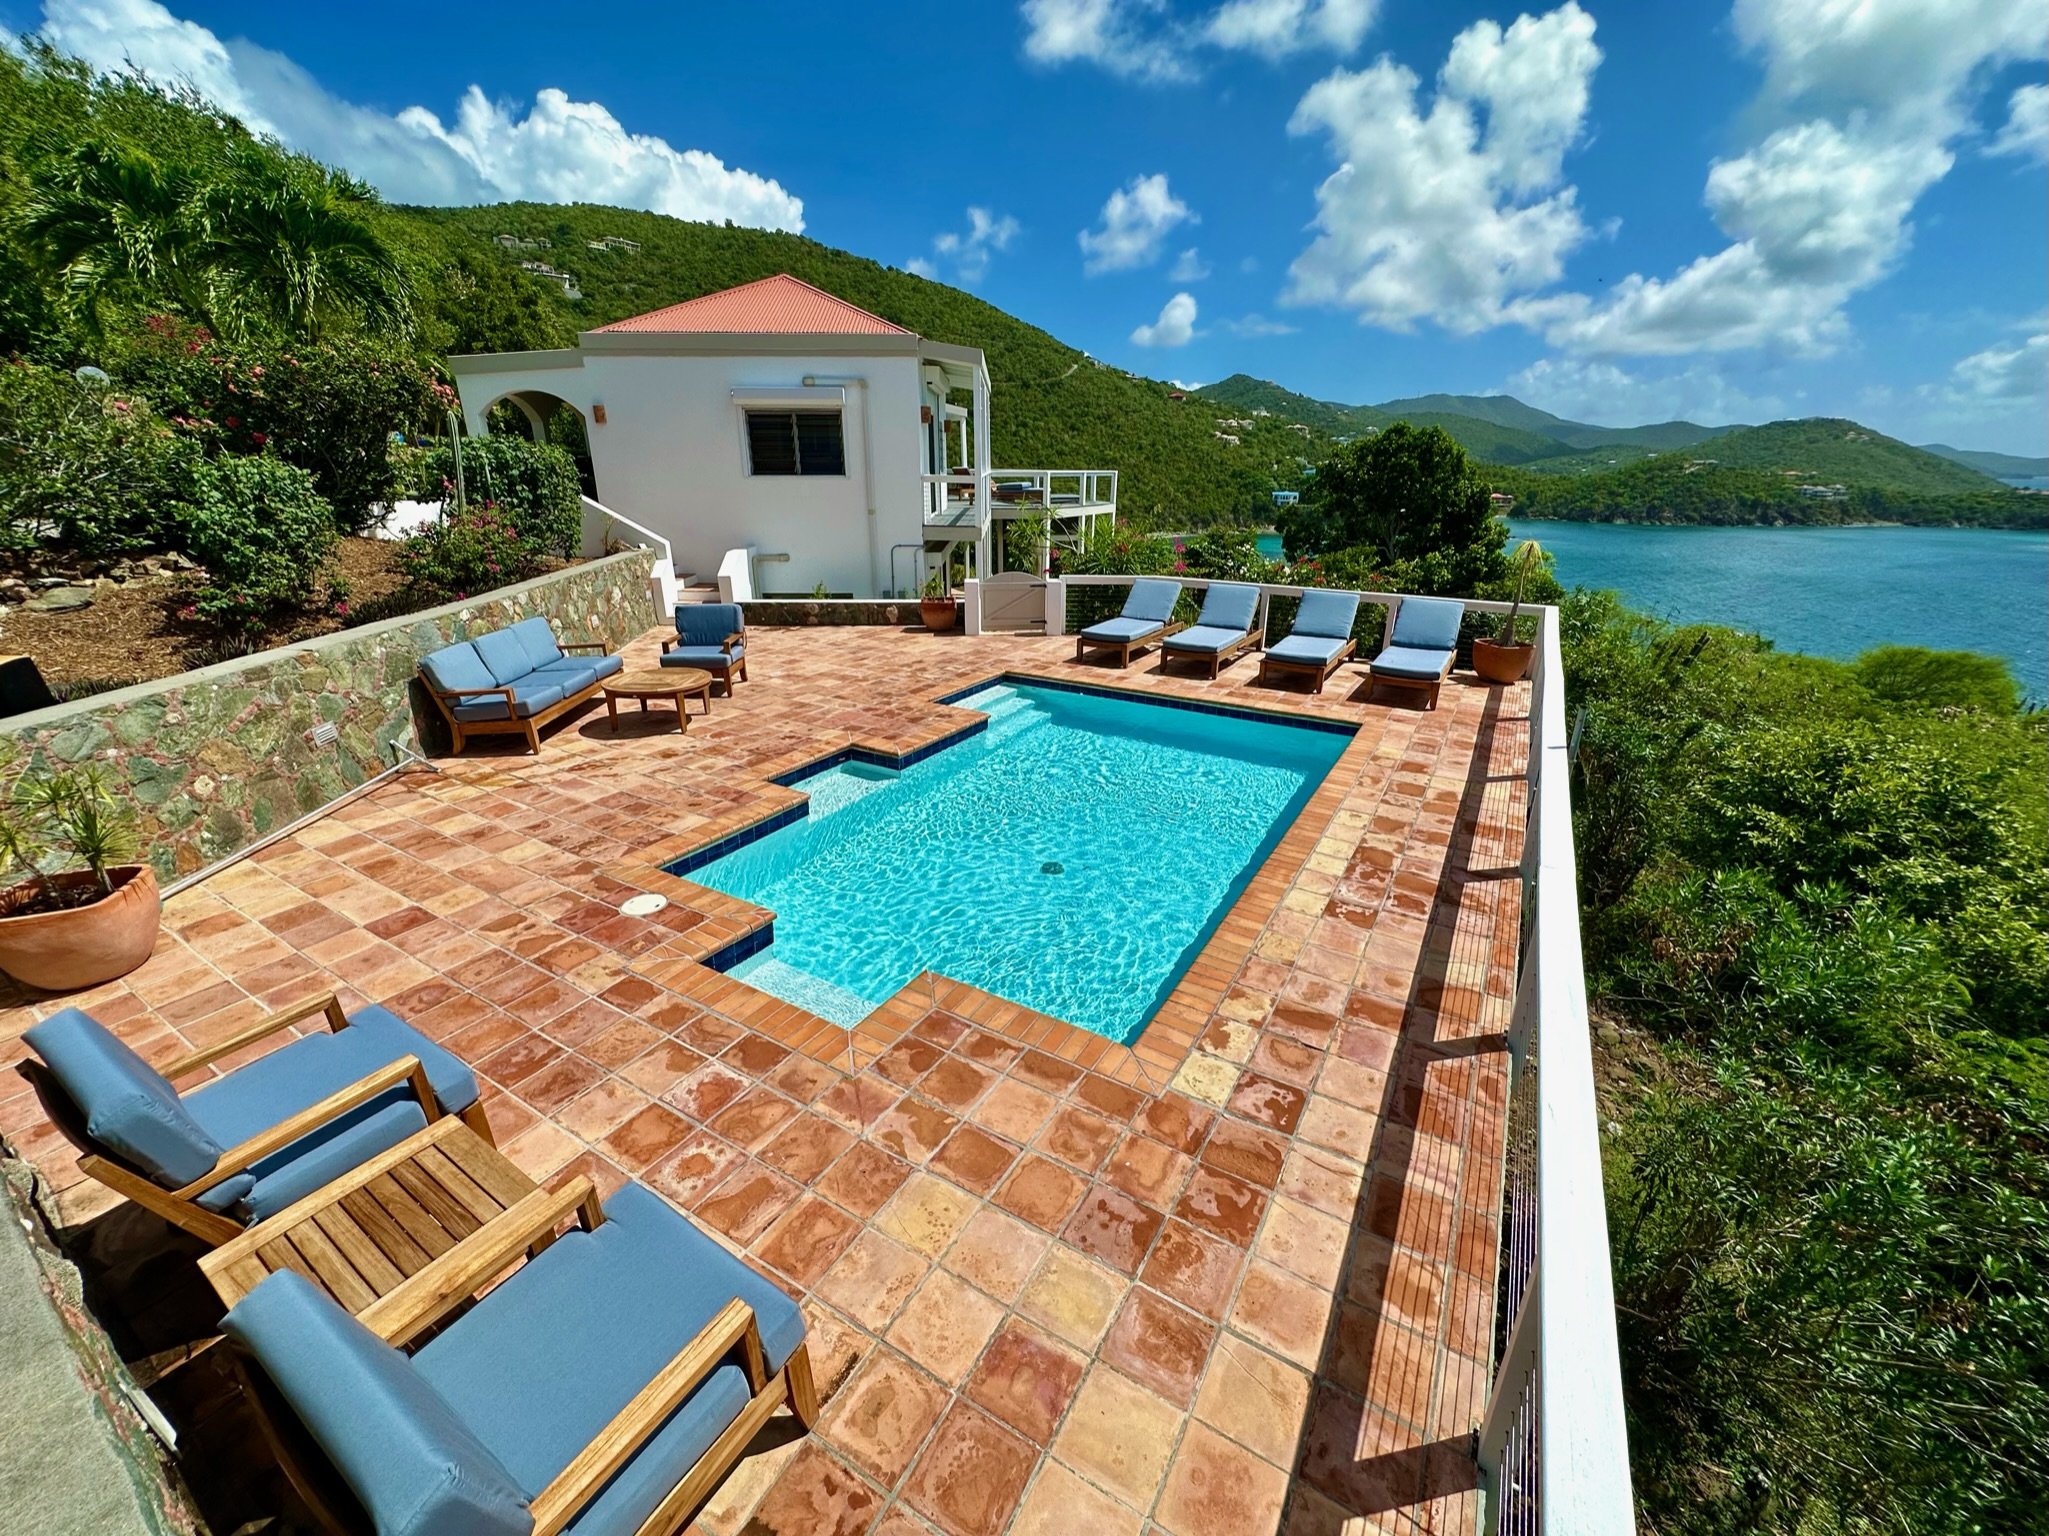 Villa pool deck